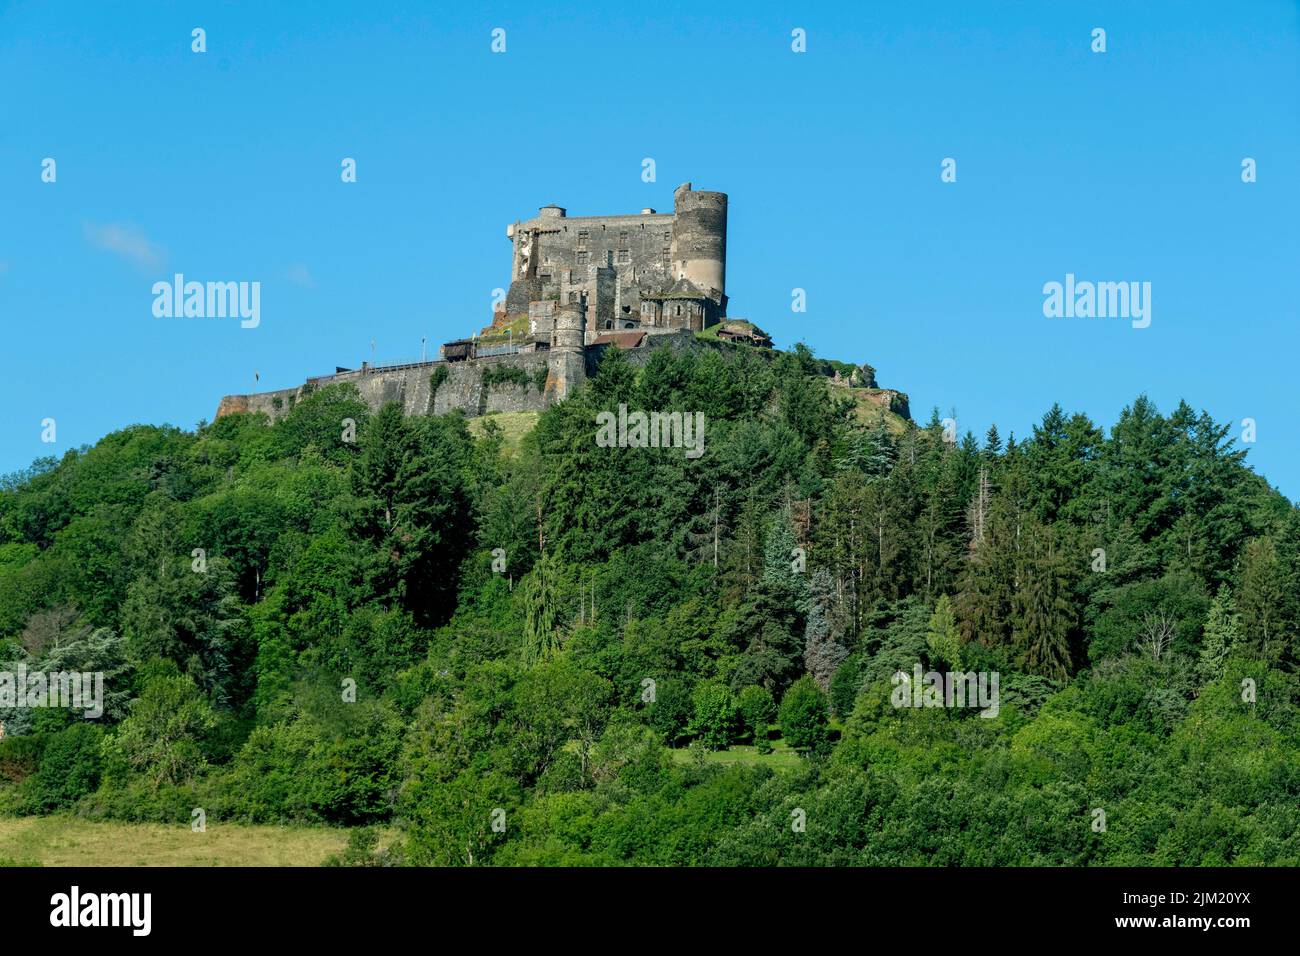 Murol castle,  Murol built on a basalt promontory in the 13th century. Auvergne Volcanoes Natural Park, Puy de Dome , Auvergne Rhone Alpes, France Stock Photo